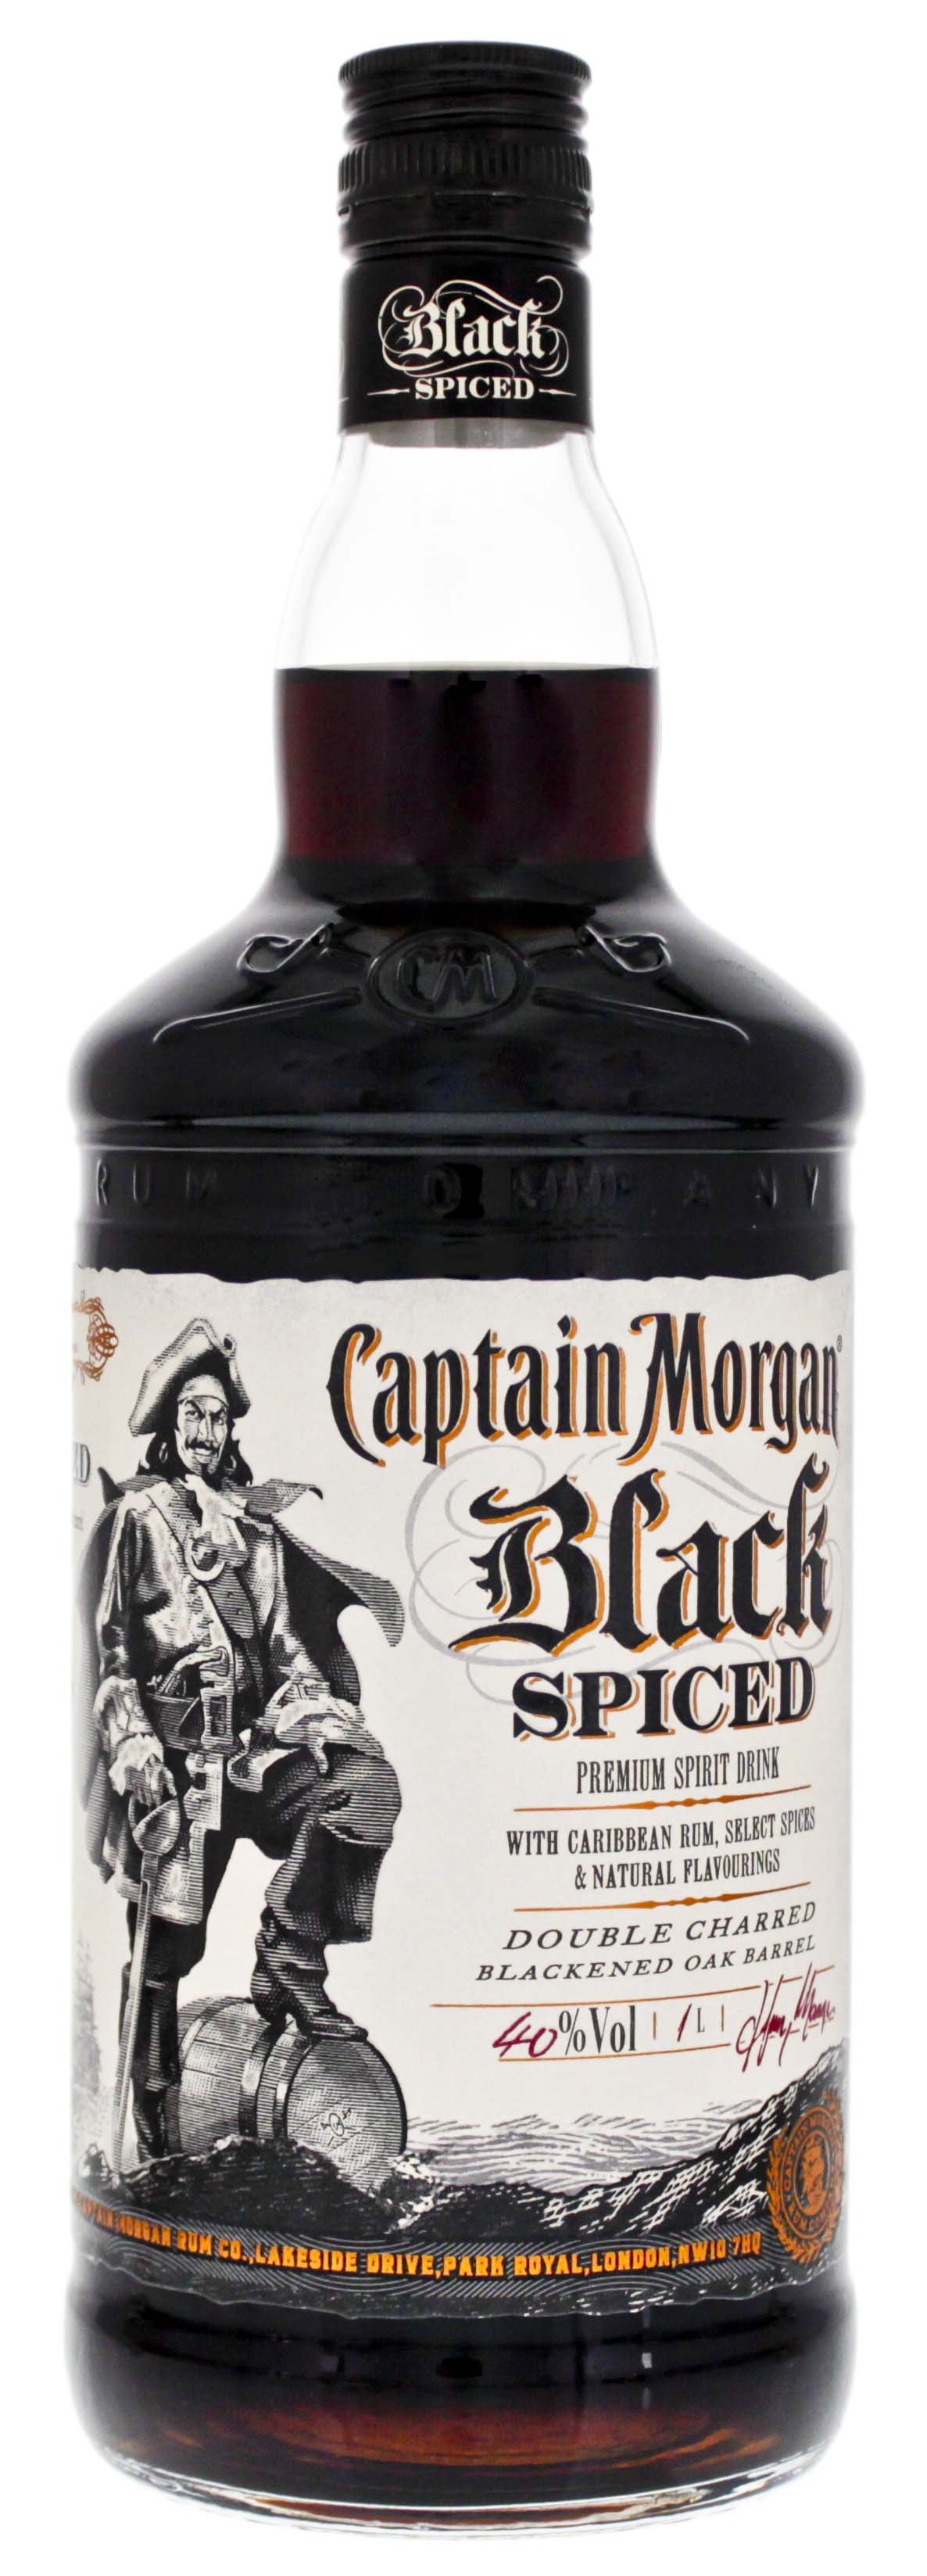 Captain Spiced & Black Online Shop Rum Rum Morgan Rhum kaufen!